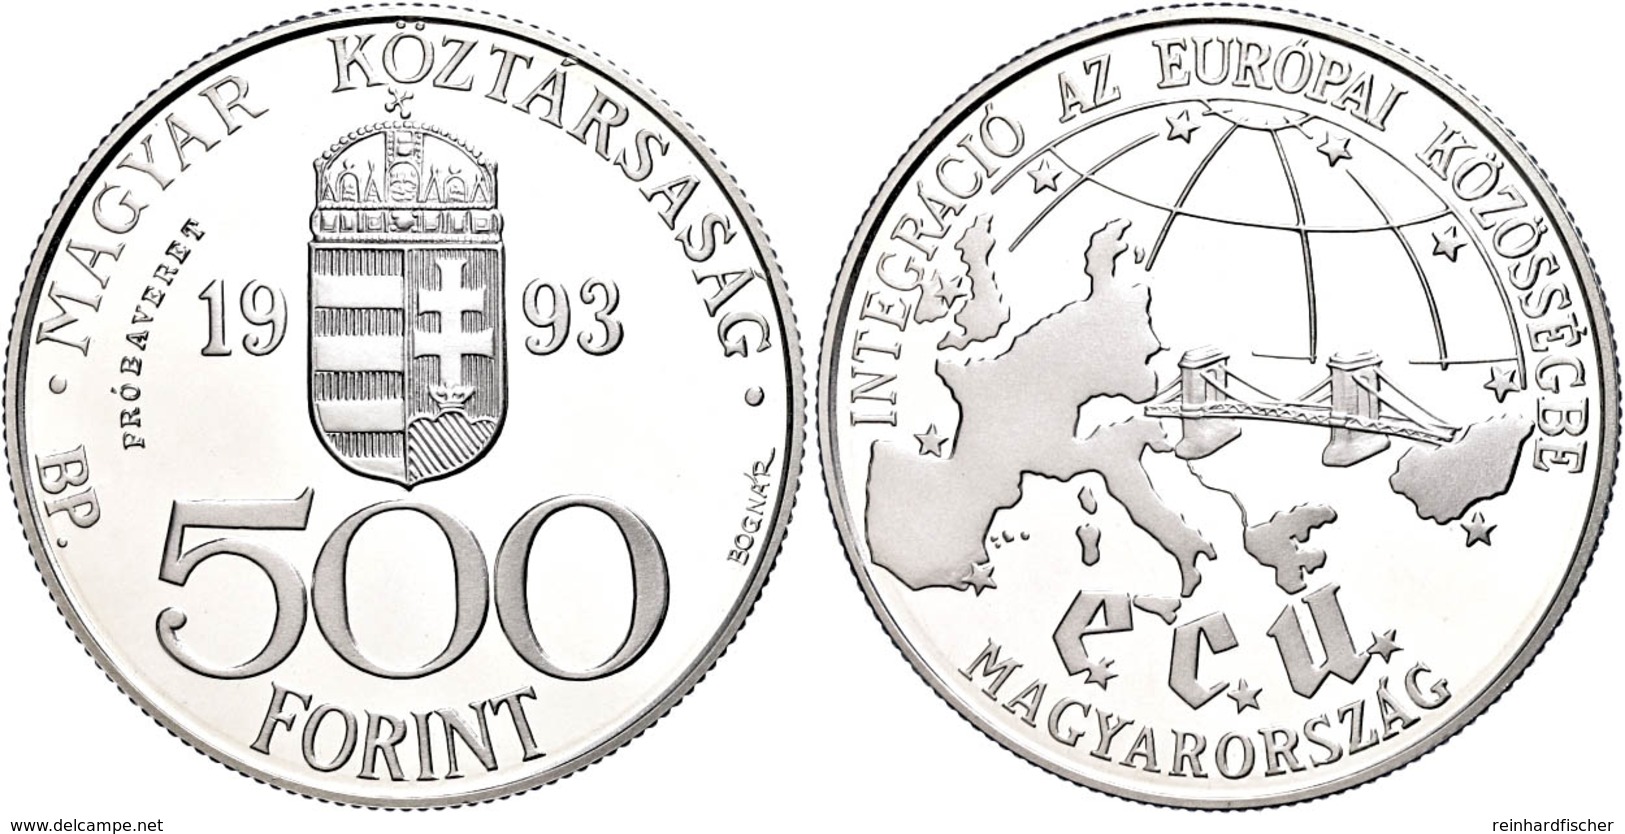 500 Forint, Silber, 1993, Probe, EU, Vgl. KM 704, In Kapsel, PP.  PP - Hongrie